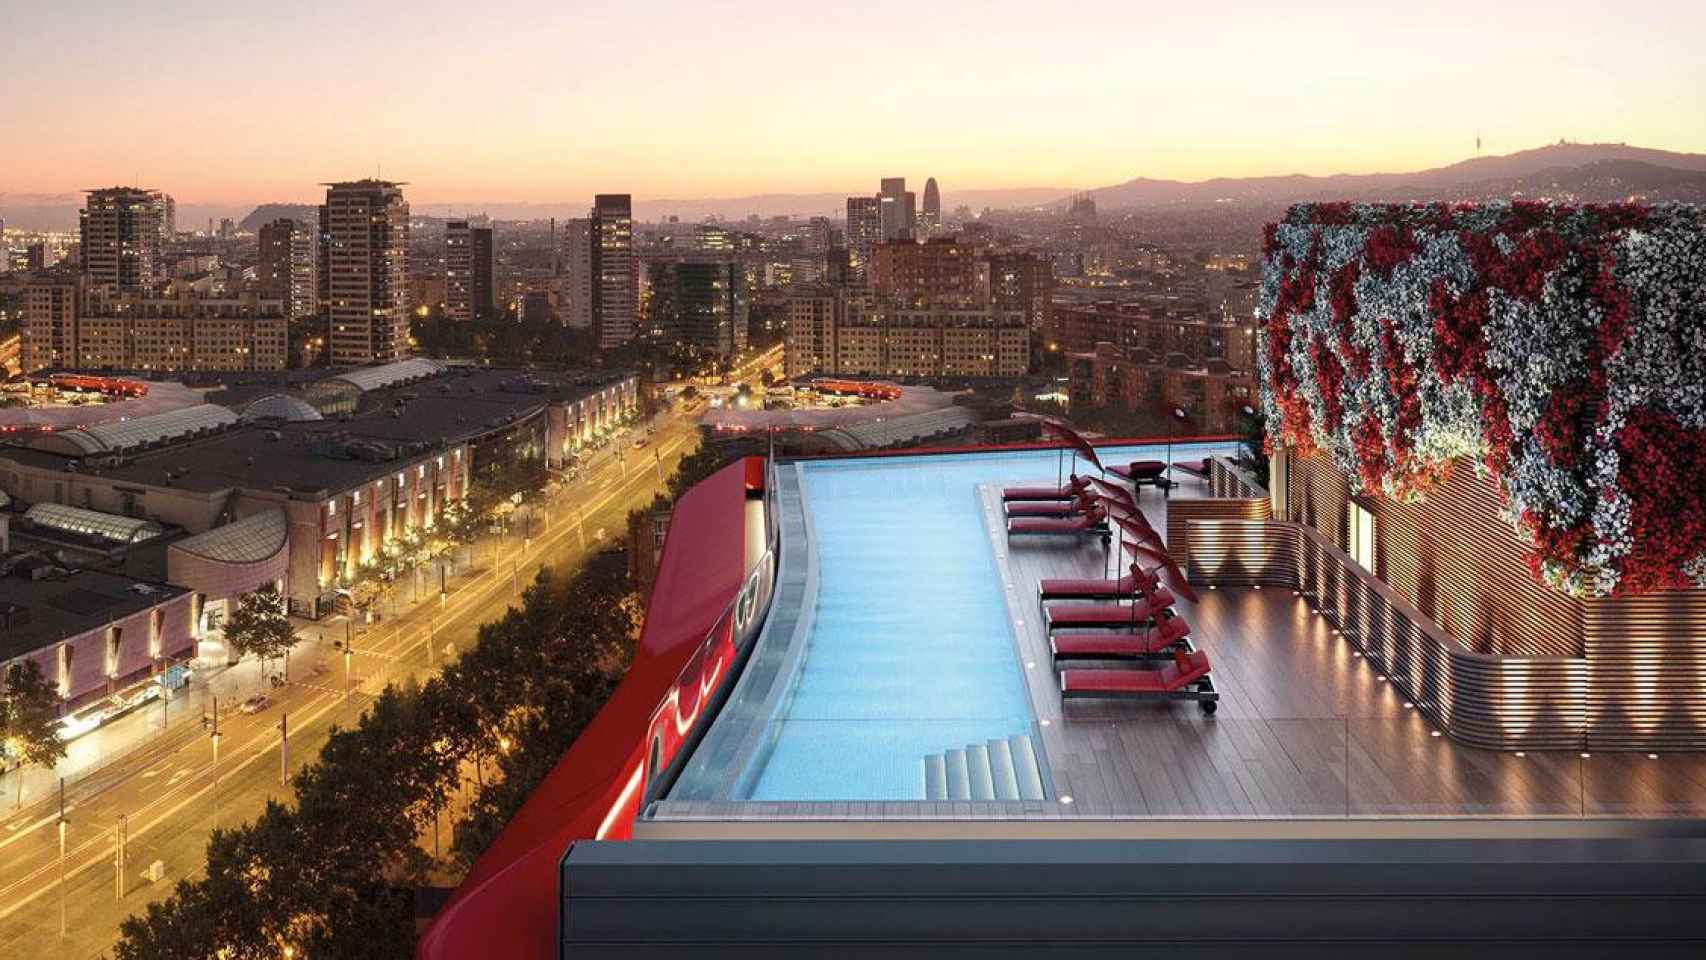 Piscina en la planta superior del bloque Antares Barcelona, que diseña la arquitecta Odile Decq / OD